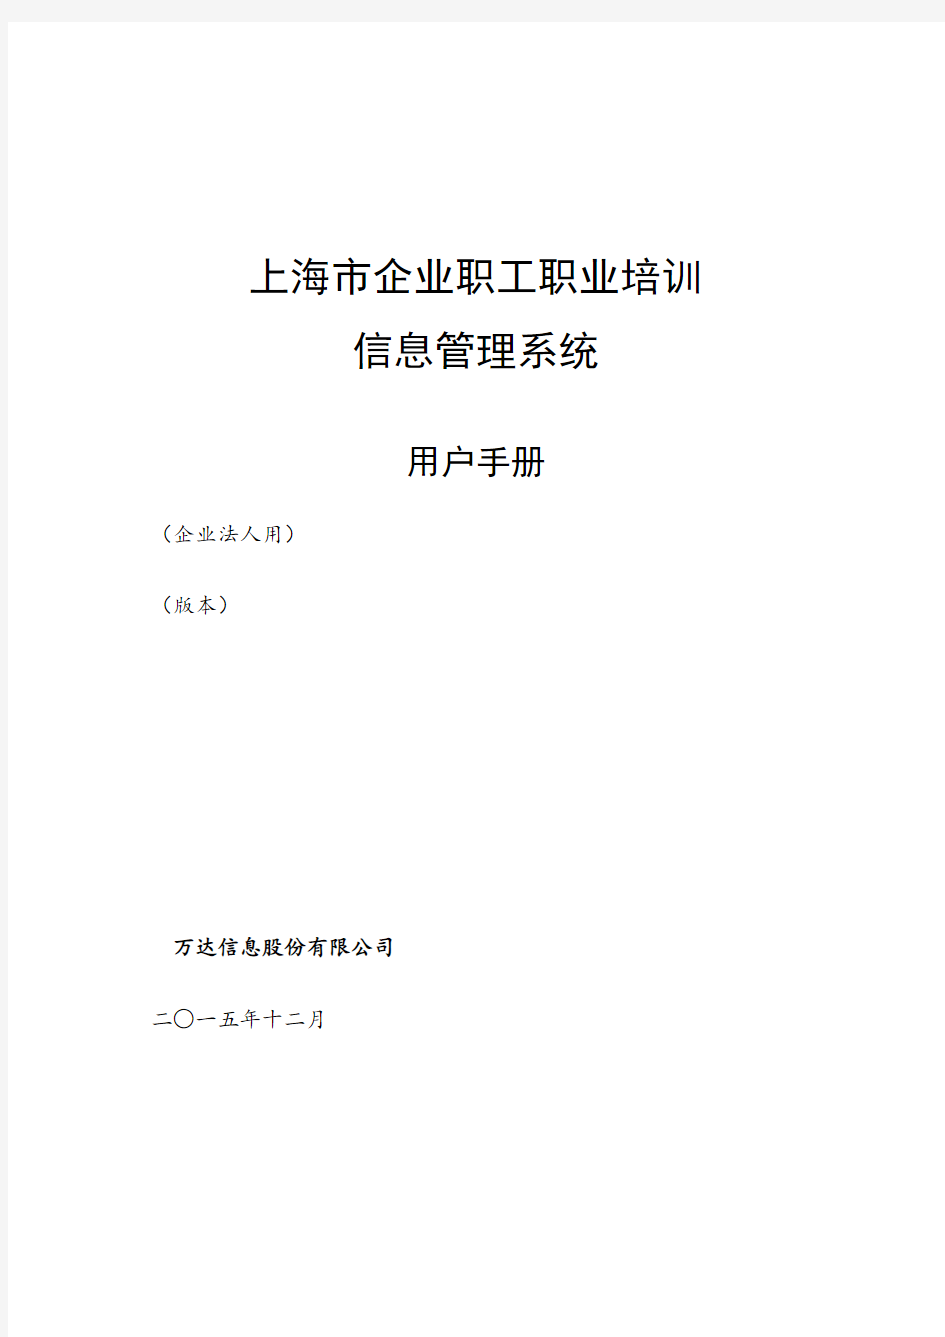 上海市企业职工职业培训信息管理系统操作手册